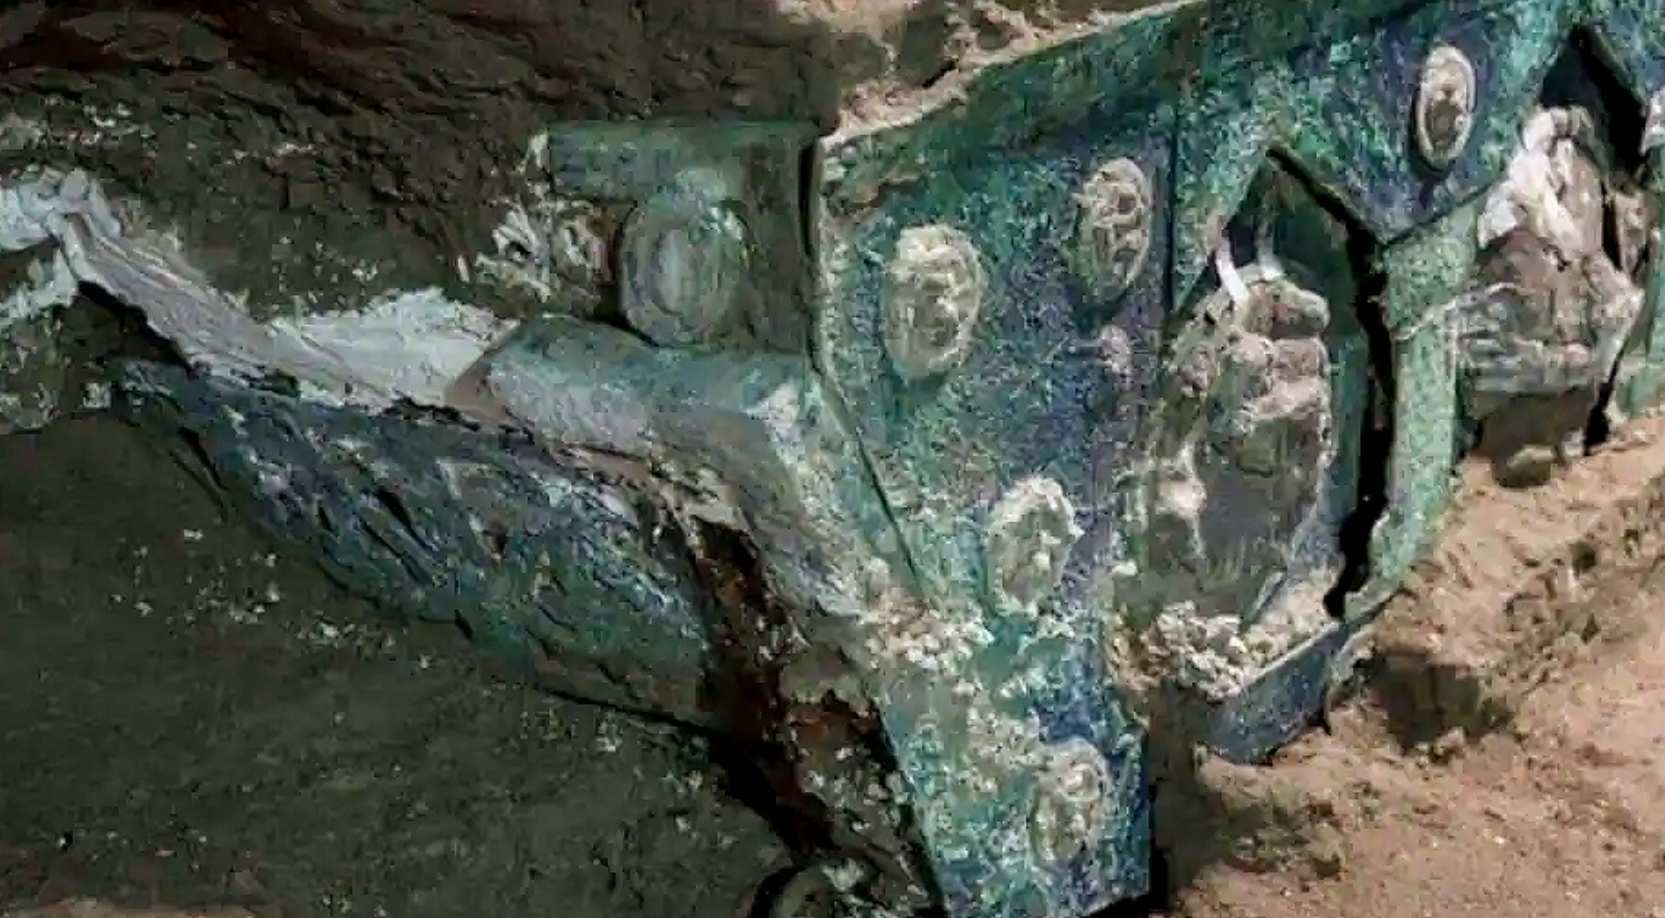 Les médaillons en bronze et étain gravés du char, encore recouverts de matière volcanique Luigi Spina / Parc archéologique de Pompéi